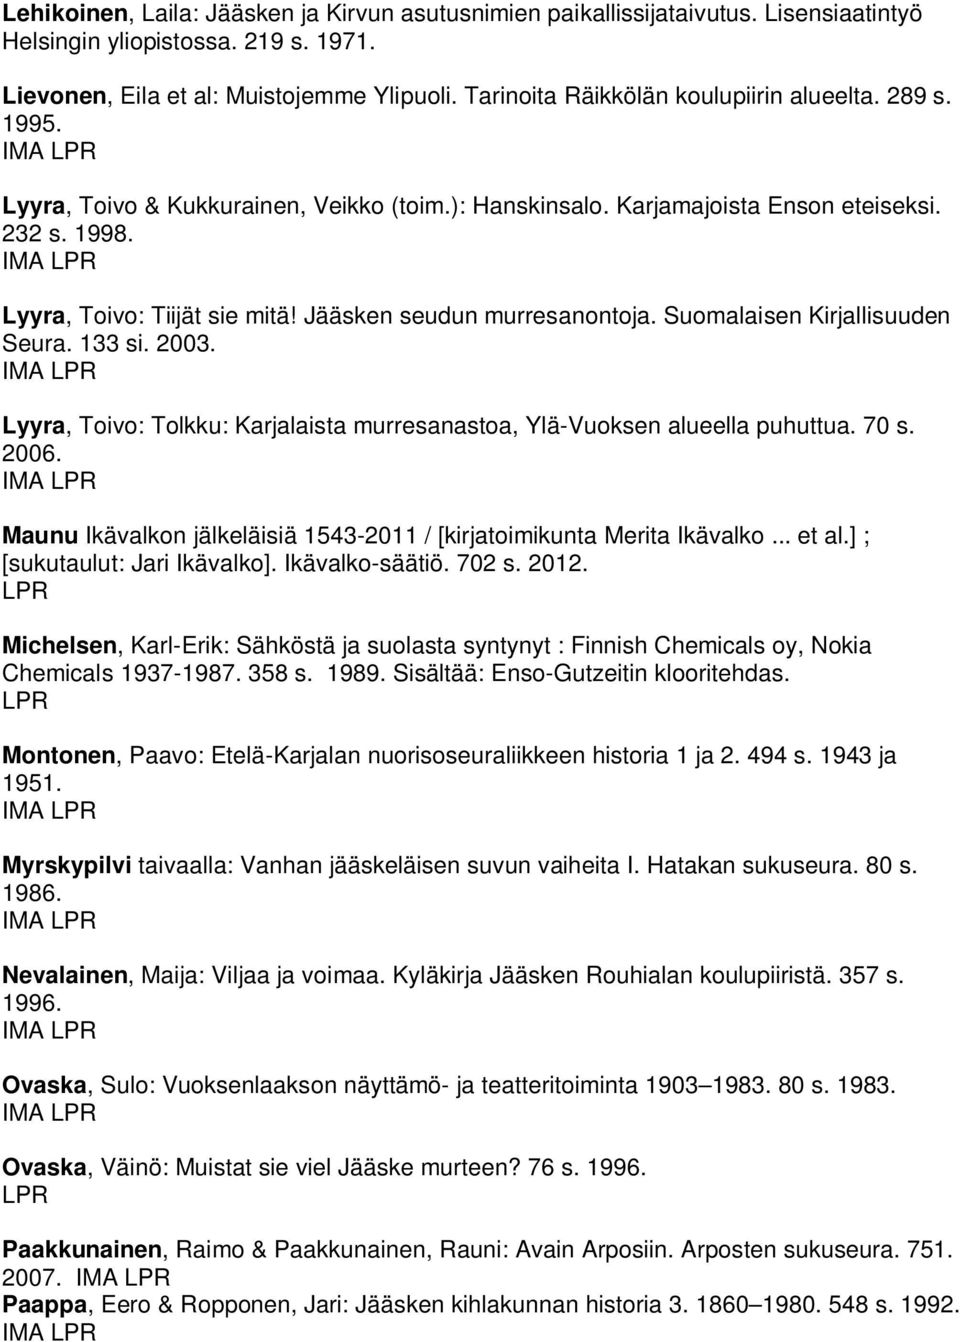 Jääsken seudun murresanontoja. Suomalaisen Kirjallisuuden Seura. 133 si. 2003. Lyyra, Toivo: Tolkku: Karjalaista murresanastoa, Ylä-Vuoksen alueella puhuttua. 70 s. 2006.